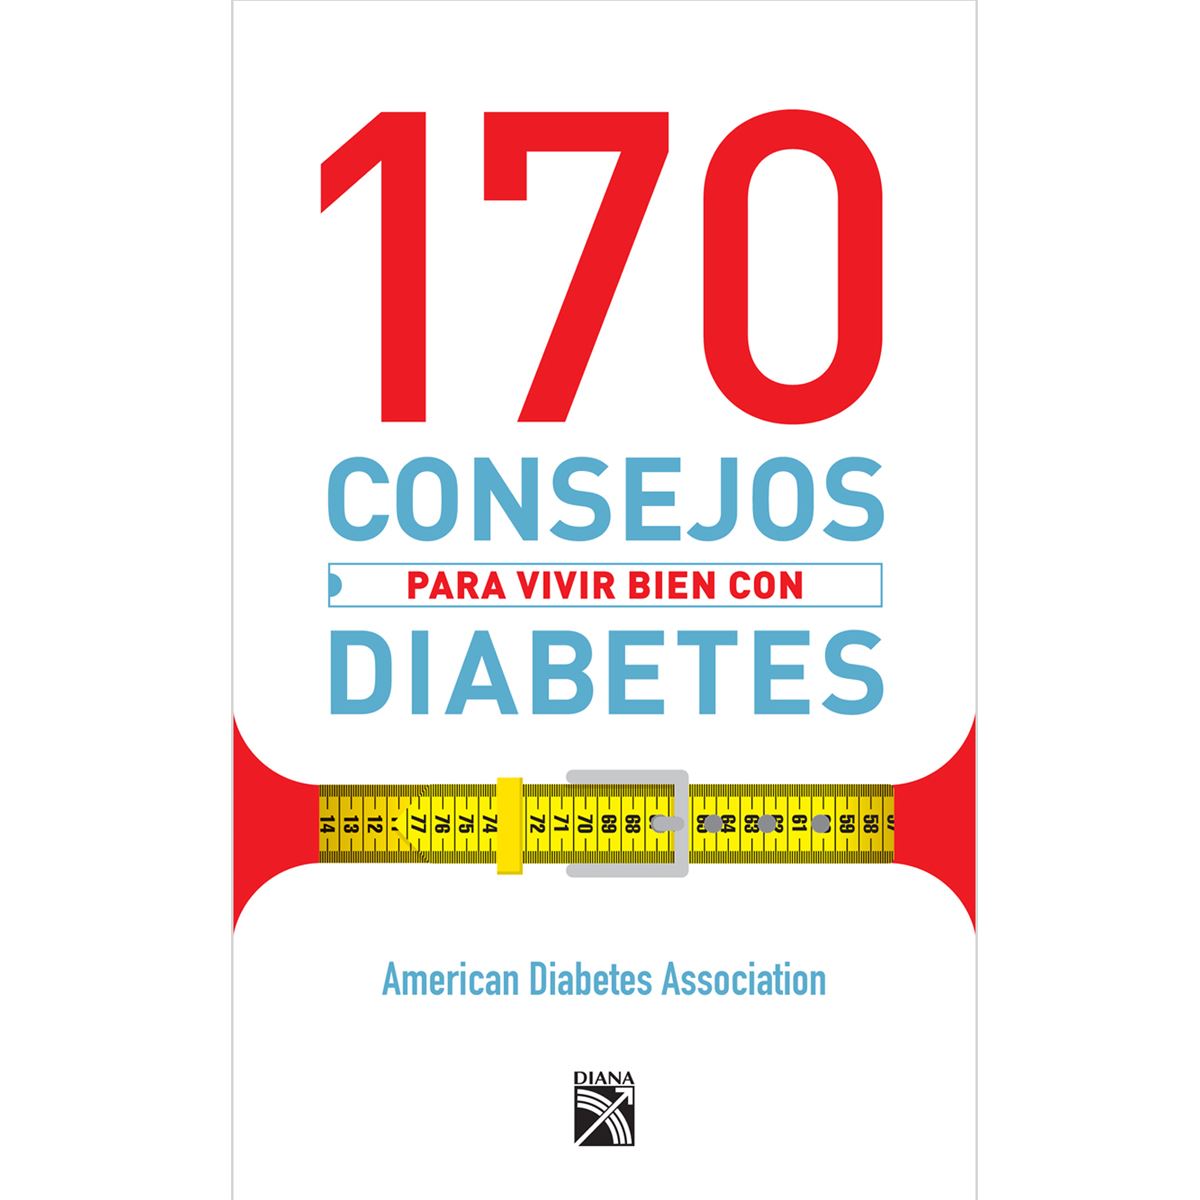 170 consejos para vivir bien con diabetes